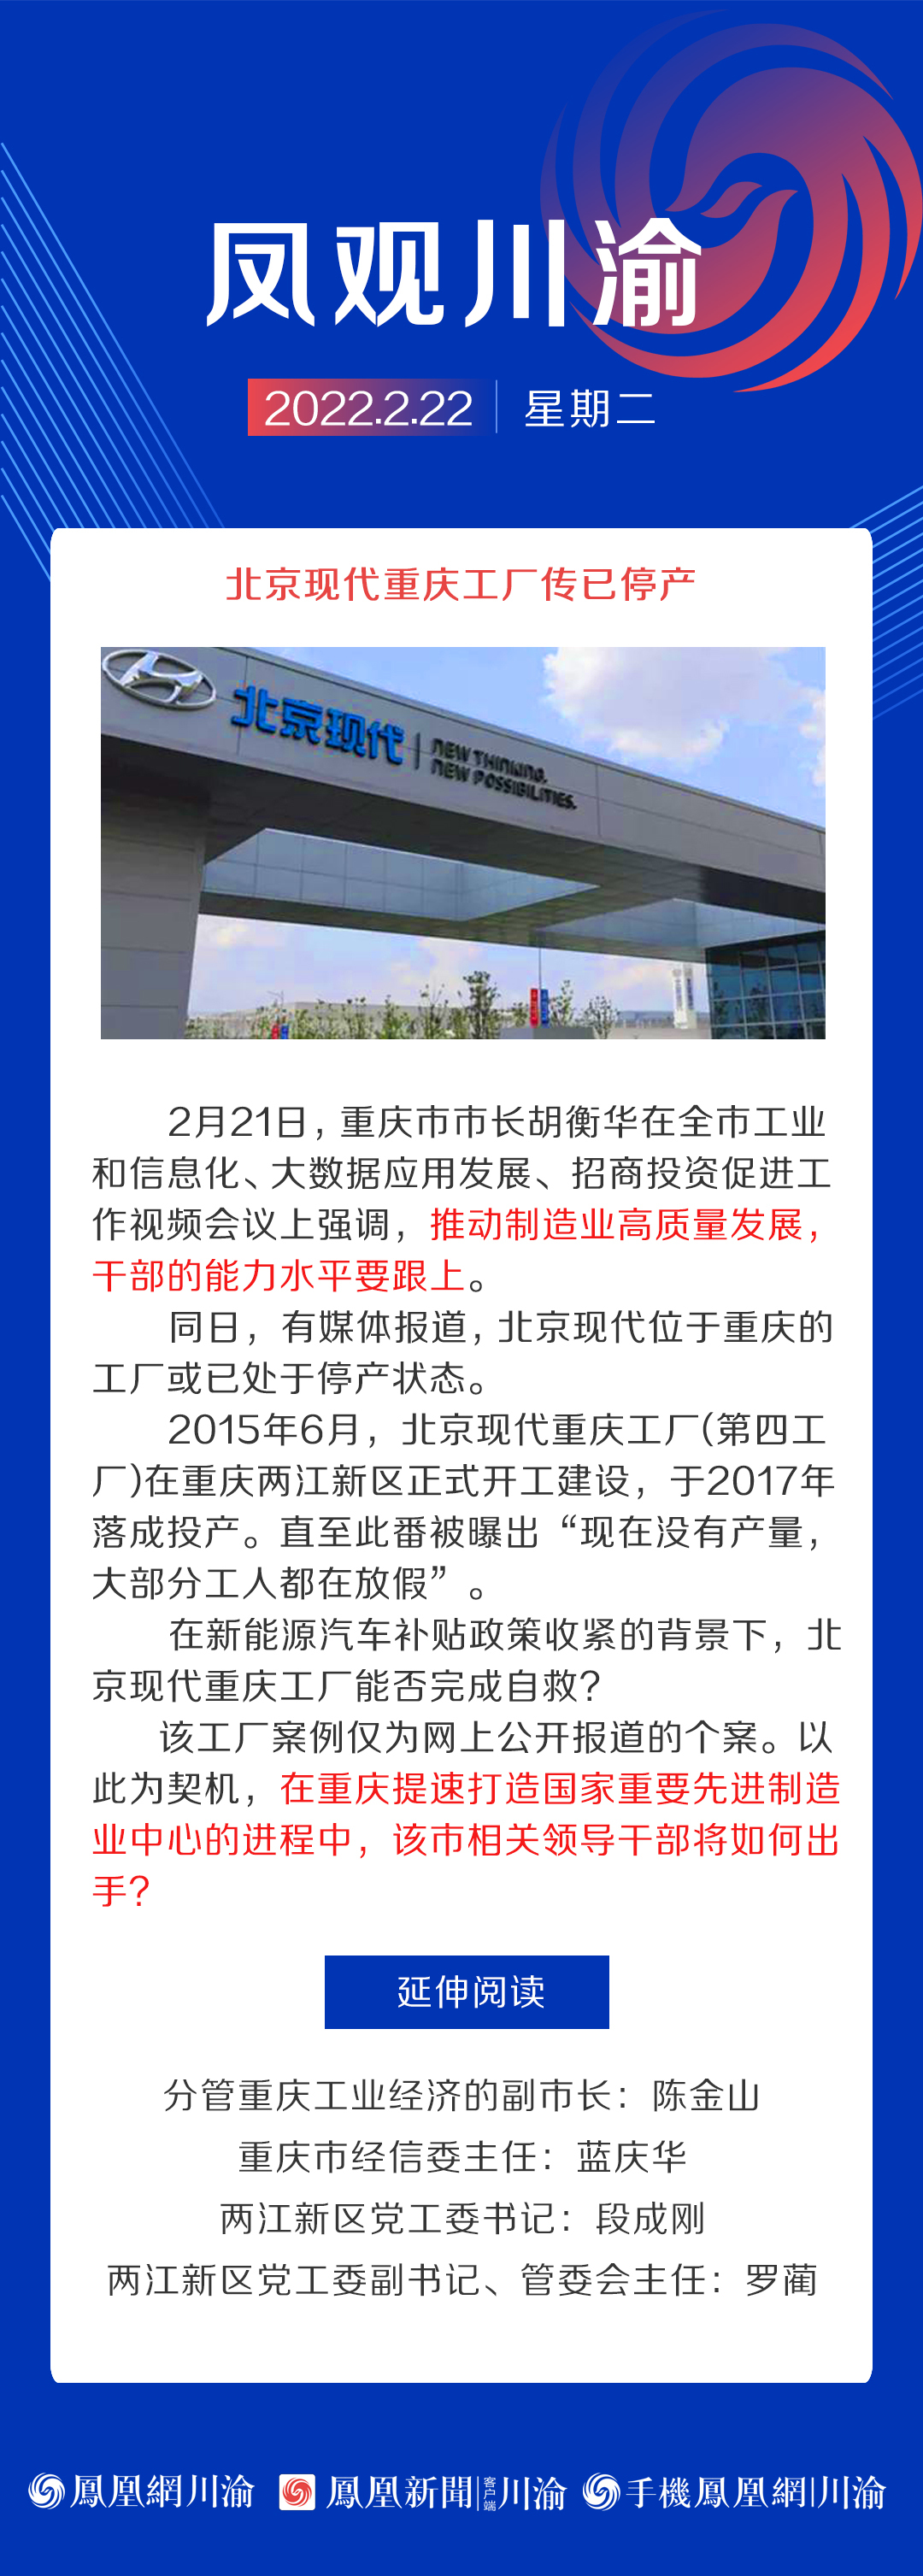 凤观川渝 | 北京现代重庆工厂传已停产